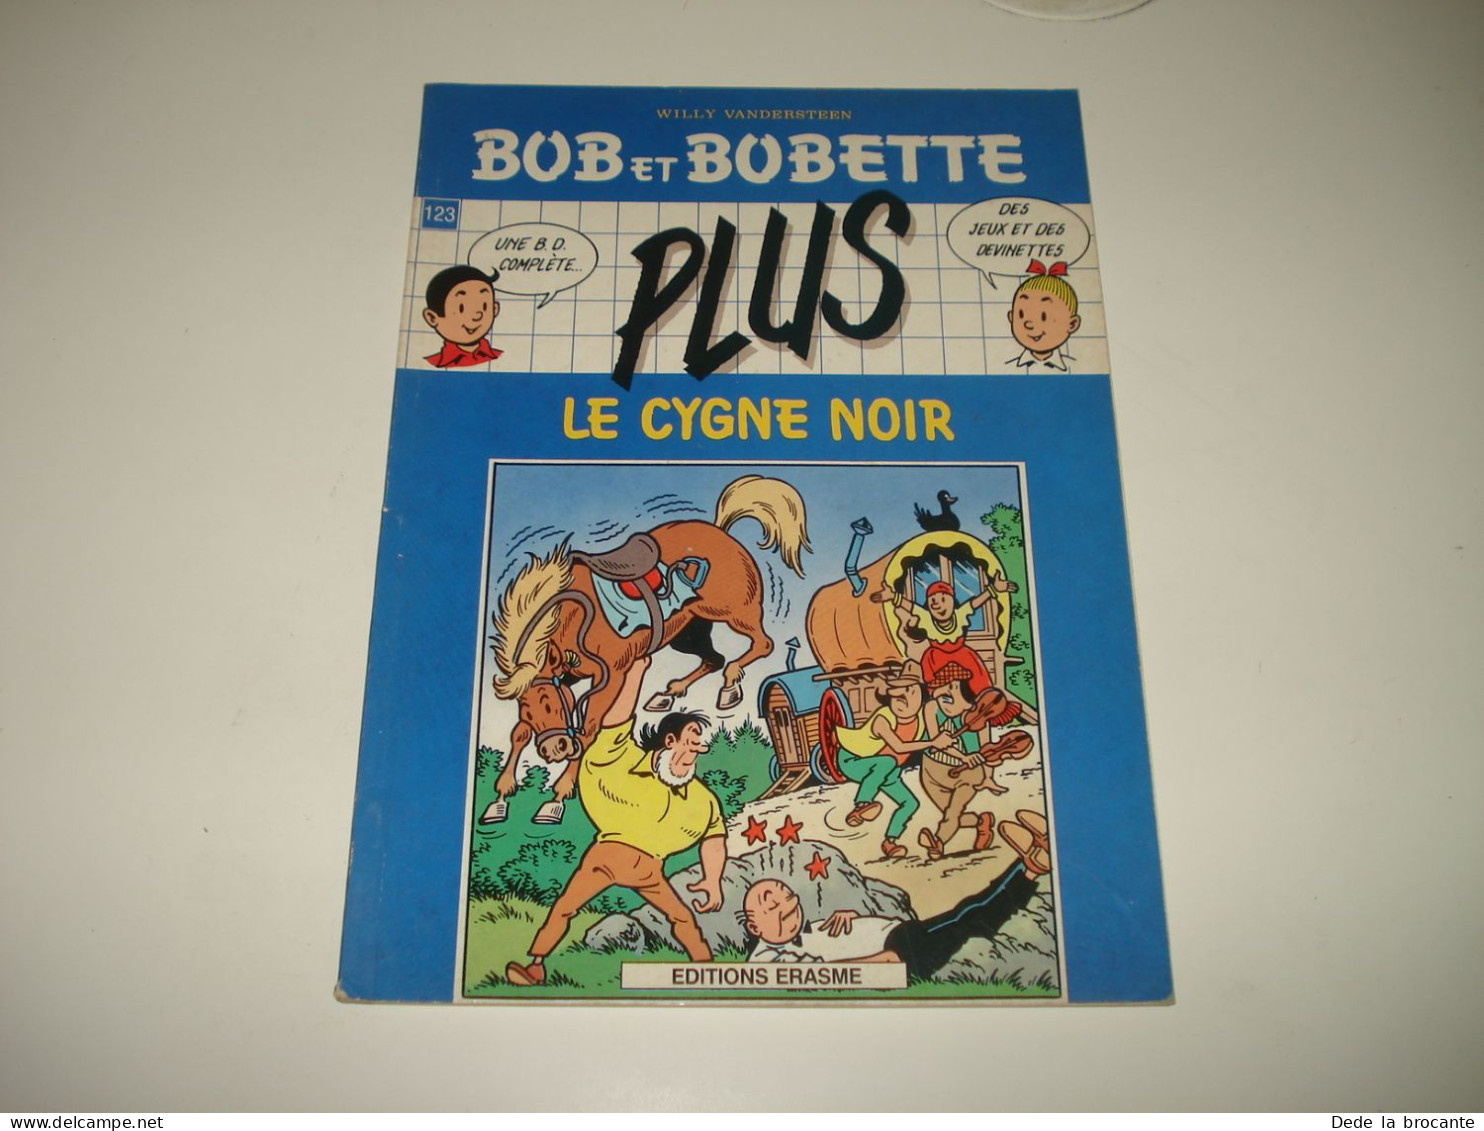 C53 / Lot de 5 Bds Bob et Bobette - 1 X Spécial vacances + 4 X PLUS jeux de 1988